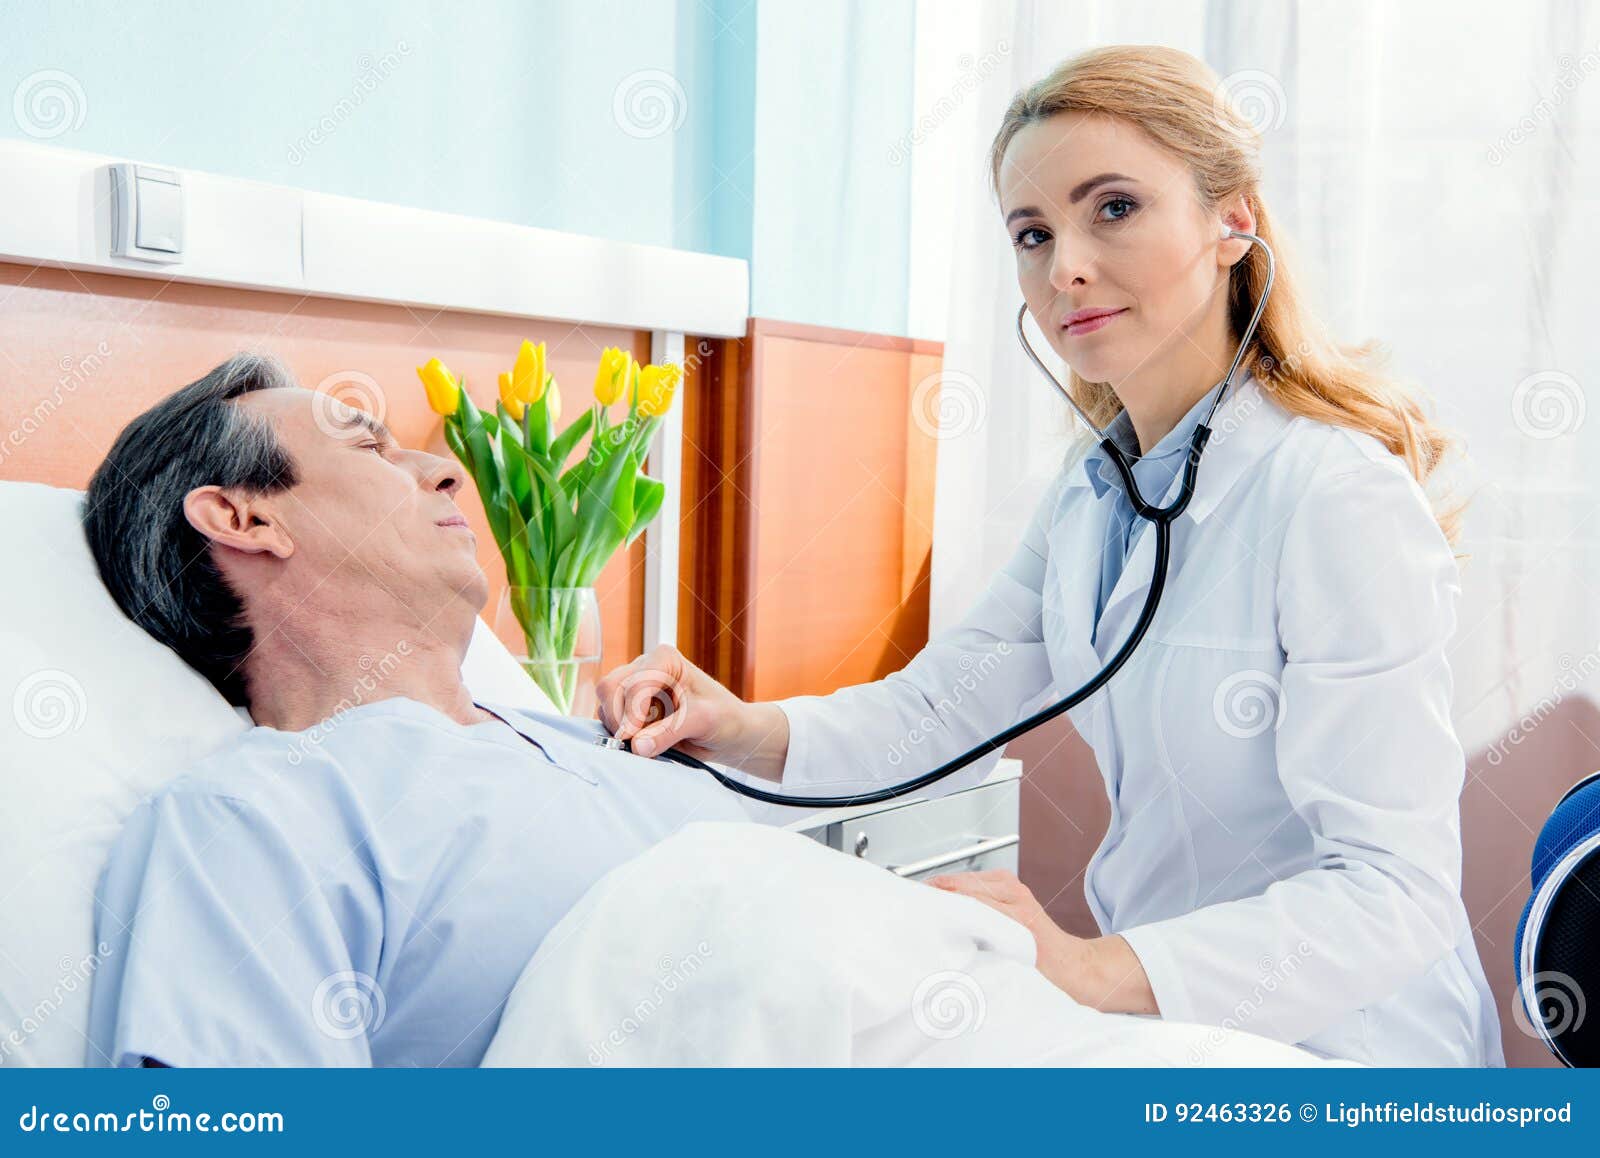 Врач к лежачему больному. Доктор и пациент на кушетке. Врач слушает пациента. Врач стетоскоп пациент. Врач и пациент фонендоскоп.